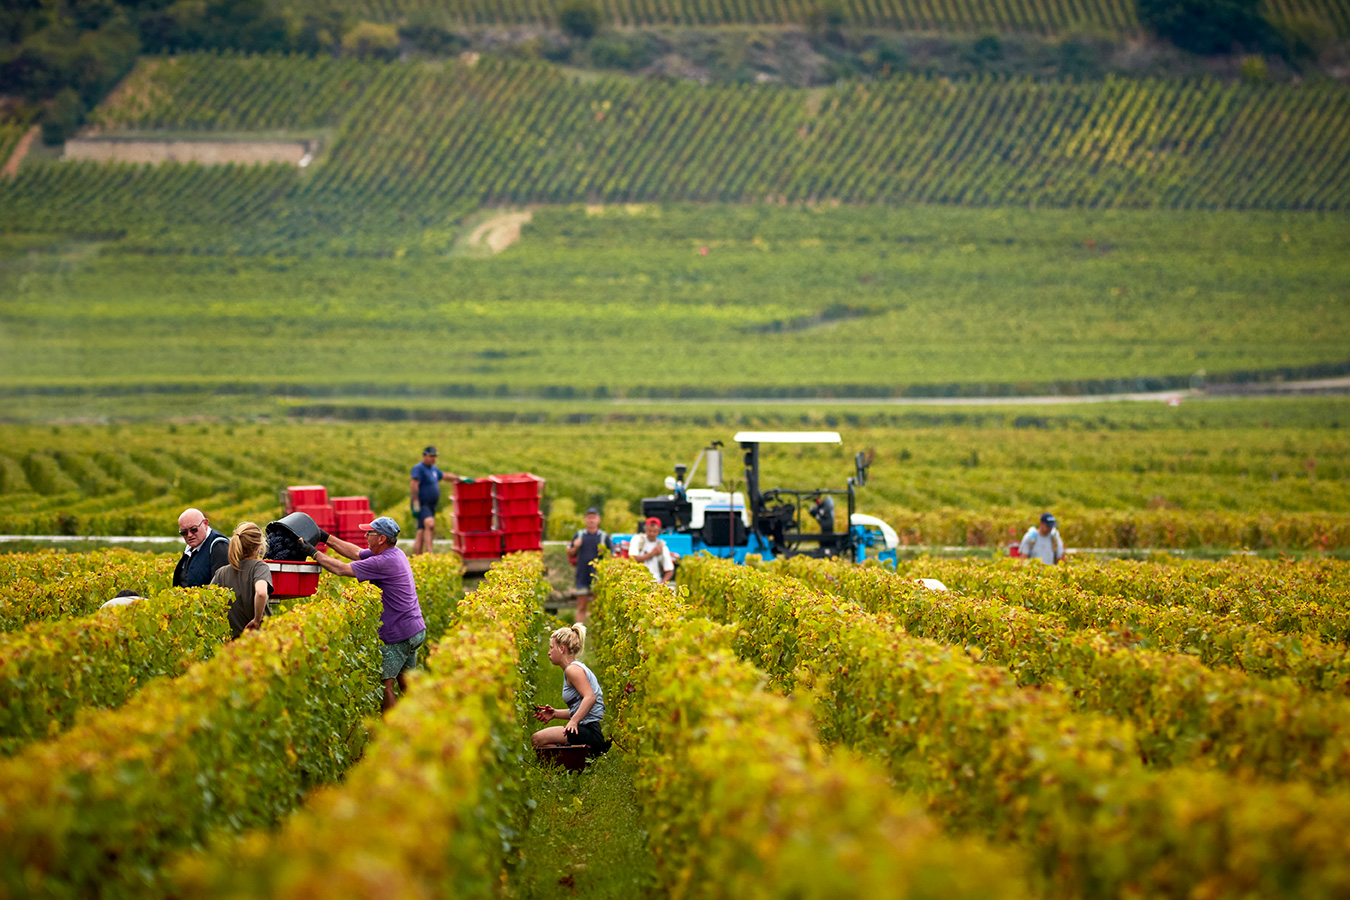 Menschen bei der Lese im Weingarten in der Burgund. Die Blätter sind bereits gelb. Ein türkiser Traktor hilft beim Transport.